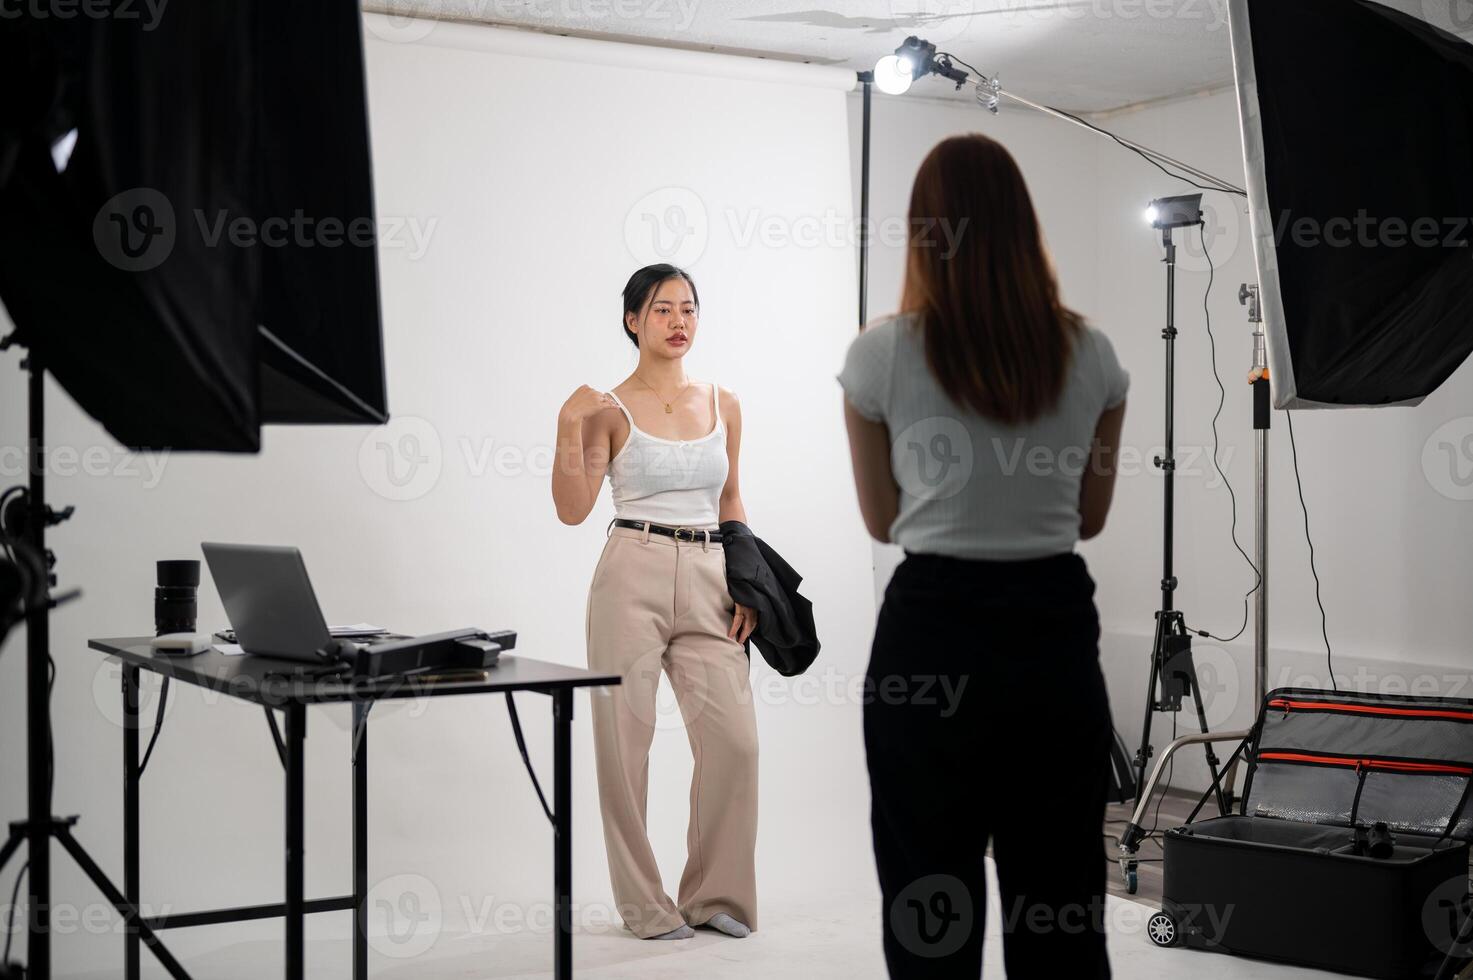 ein Fachmann Fotograf ist nehmen Bilder von ein attraktiv jung asiatisch weiblich Modell- im ein Studio foto